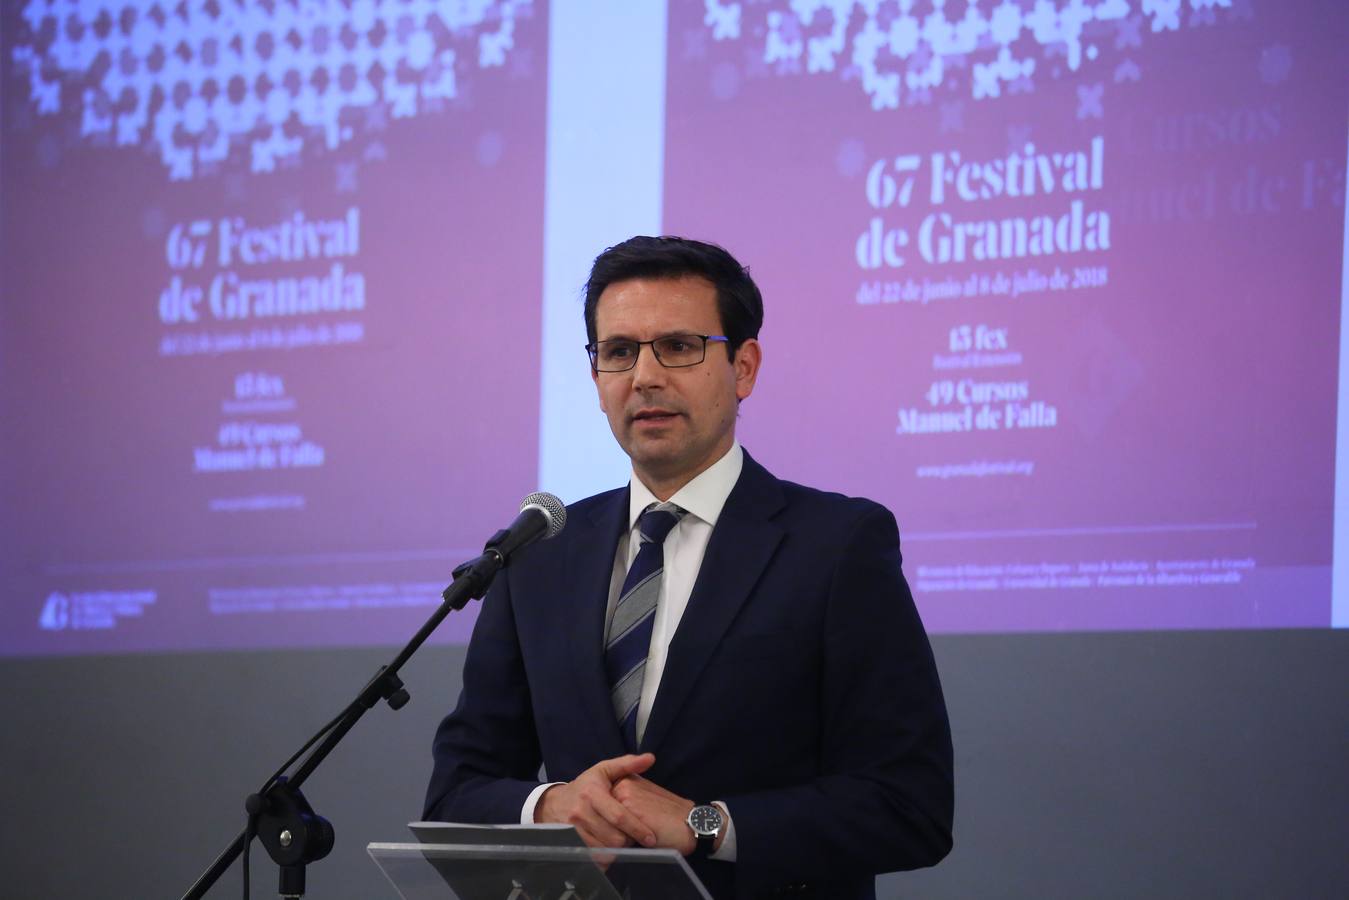 Pablo Heras-Casado apuesta por crear «el mejor Festival del mundo» en Granada